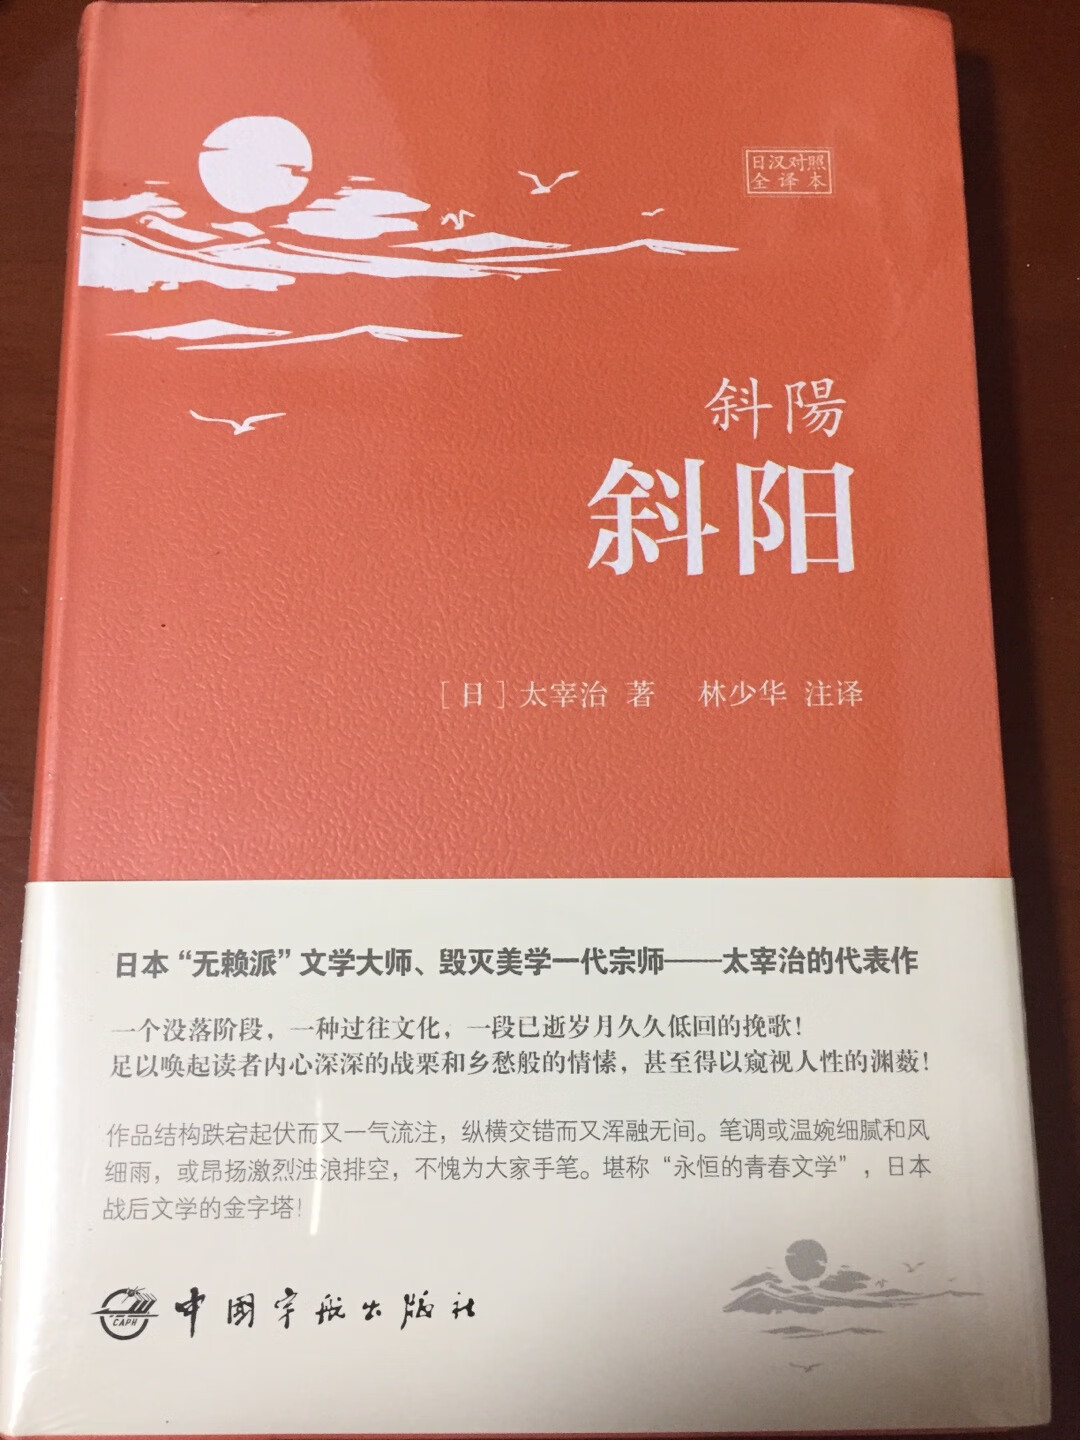 林少华大王翻译了整整一个系列啊哈哈哈真是太惊喜了，还是日中双语版本的，神奇神奇